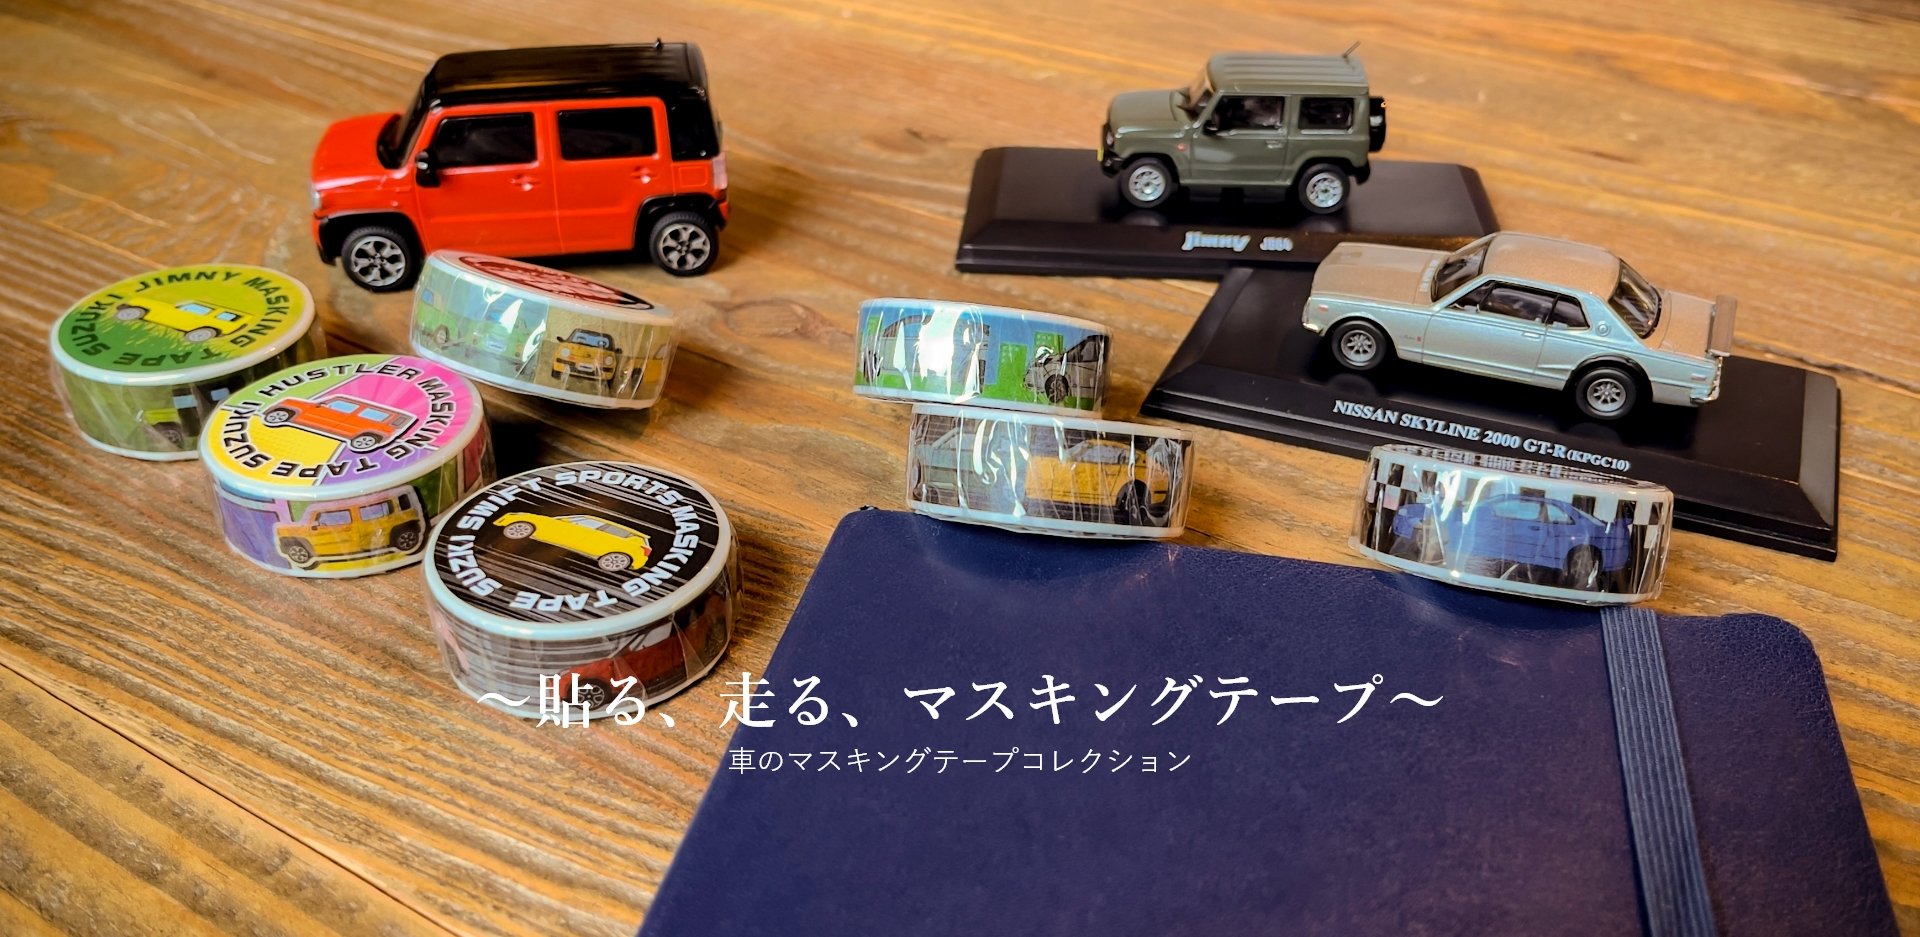 Gt R ジムニー ハスラー など7車種のイラストを使用したマスキングテープ Car Watch